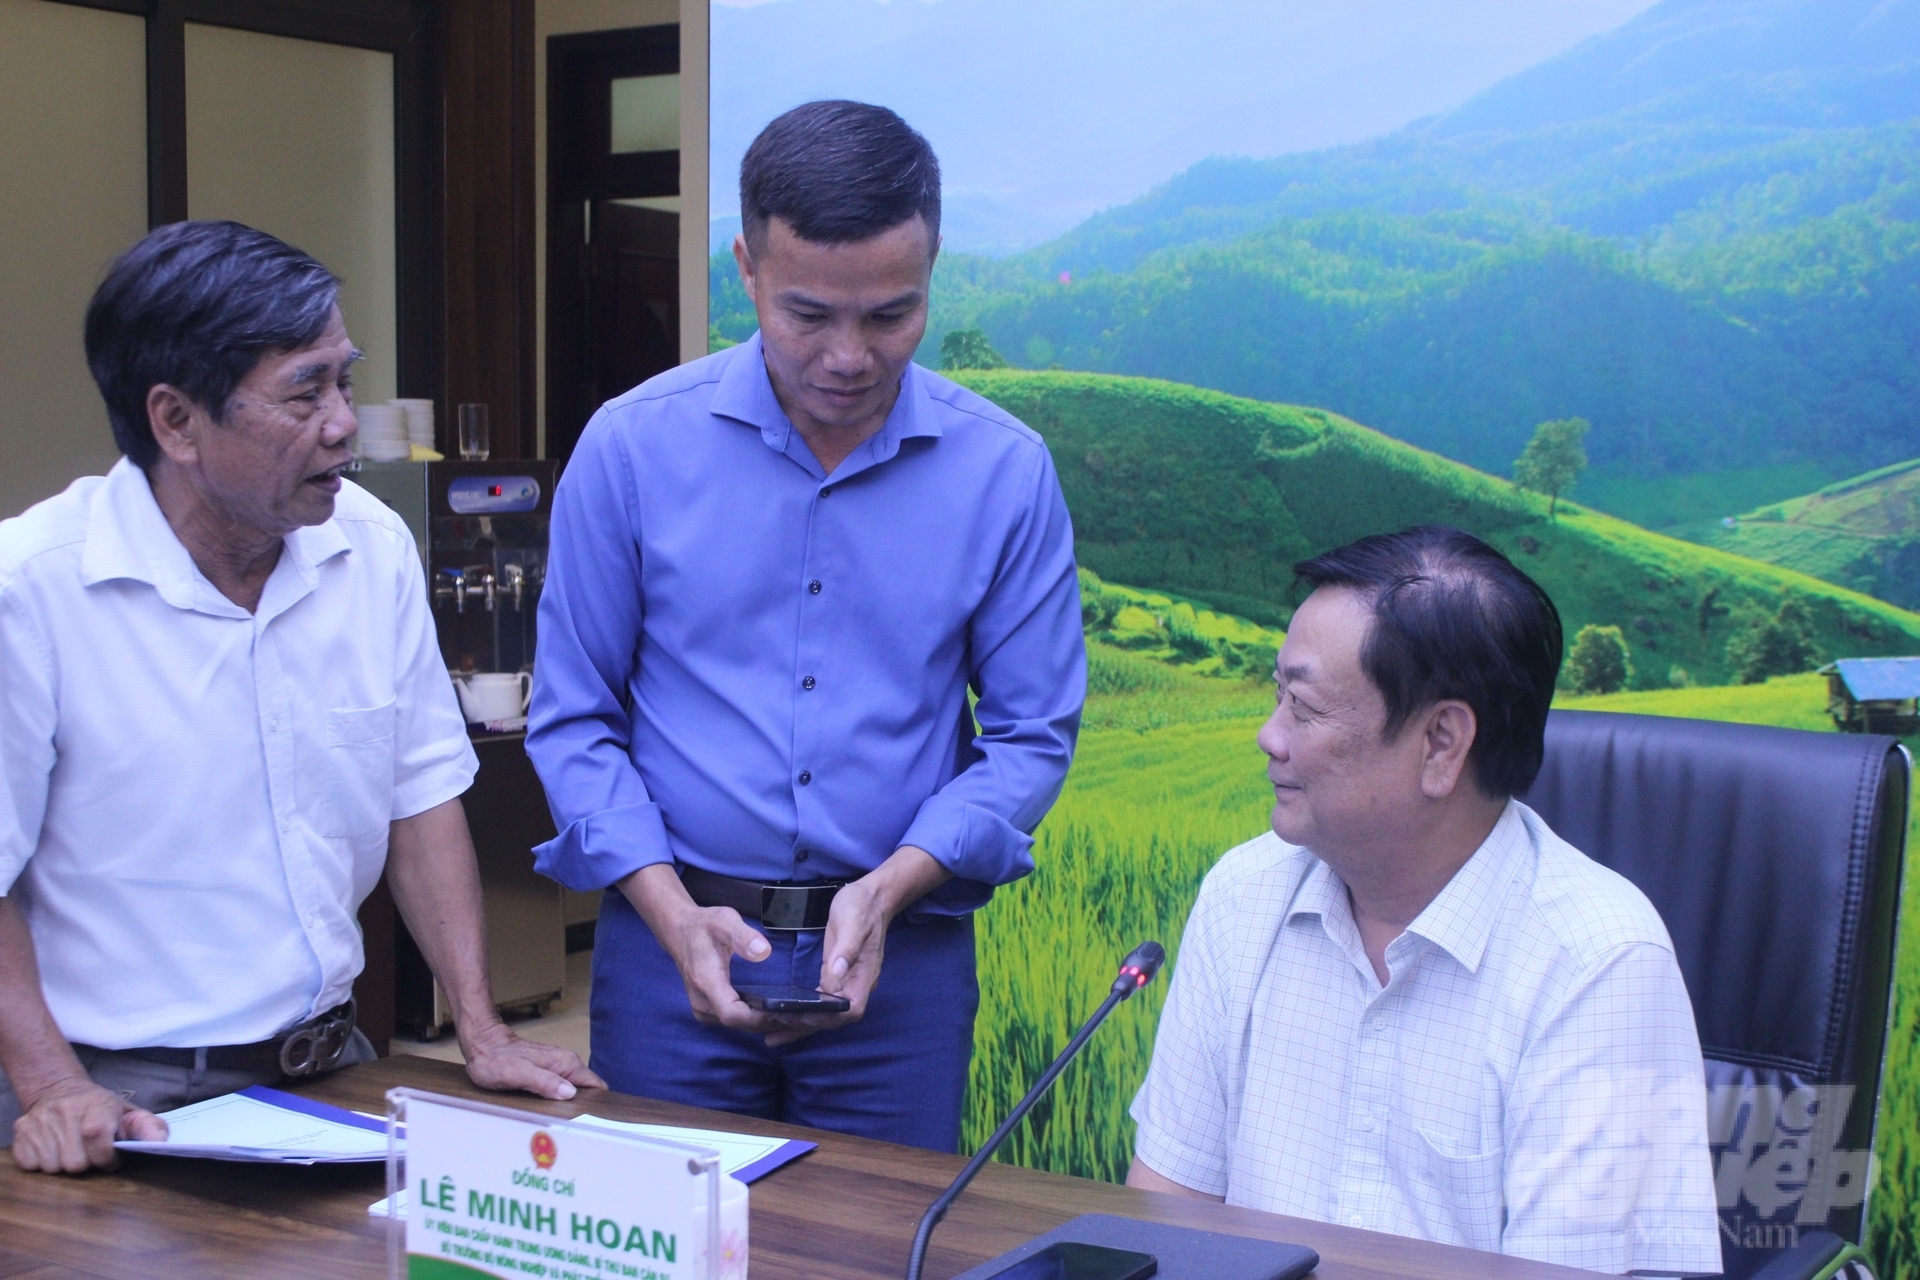 Anh Trịnh Ngọc Tiệp (áo xanh), chủ trang trại tại Hưng Yên trình bày với Bộ trưởng Lê Minh Hoan về vướng mắc trong phát triển mô hình du lịch tại trang trại trồng nhãn. Ảnh: Kiên Trung.